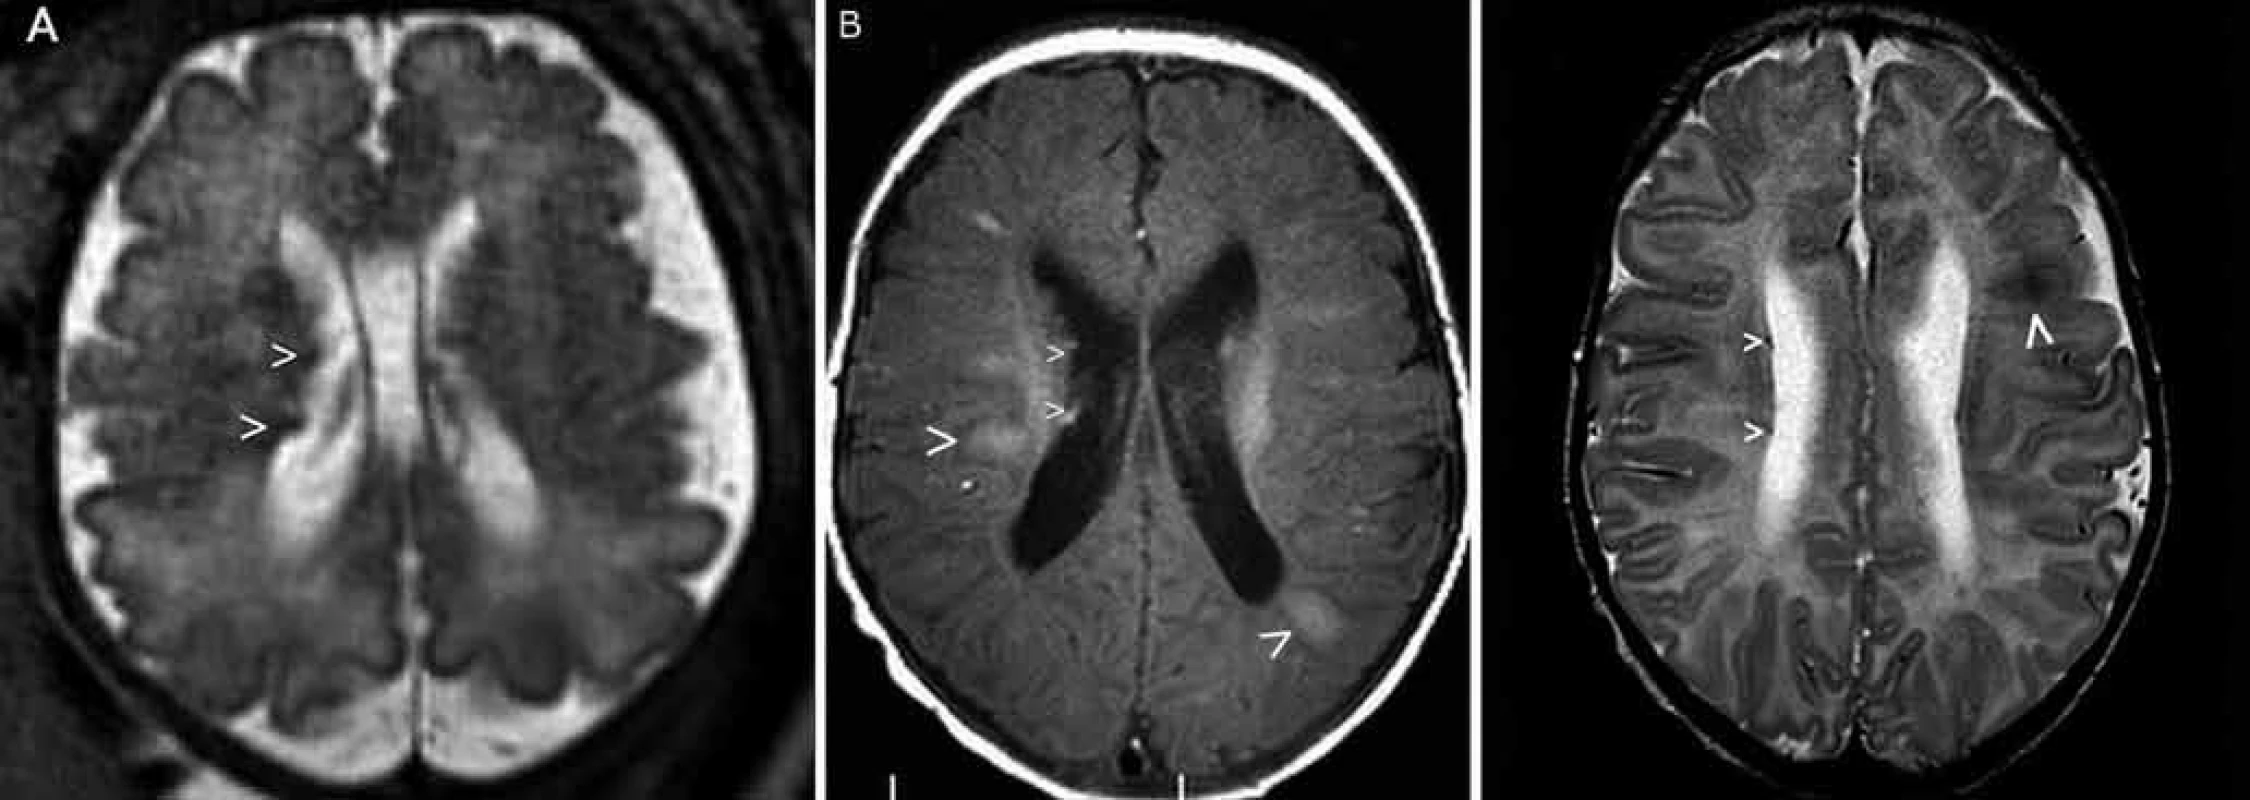 Prenatální (a) a postnatální (b, c) MR vyšetření u pacienta 2.
Obr. 3a) Prenatální MR vyšetření mozku, 34. gestační týden – dva subependymální noduly v pravé postranní komoře (šipky), nezralá myelinizace.
Obr. 3b) Postnatální MR vyšetření mozku, 2. měsíc života – sekvence flair v axiální rovině – mnohočetná hyperintenzní ložiska charakteru tuberů s migračními liniemi (velké šipky) a subependymální noduly (malé šipky).
Obr. 3c) Sekvence T2 v axiální rovině – vícečetné subependymální noduly jsou drobné, hyposignální (malé šipky). Tuber frontálně vlevo (velká šipka).